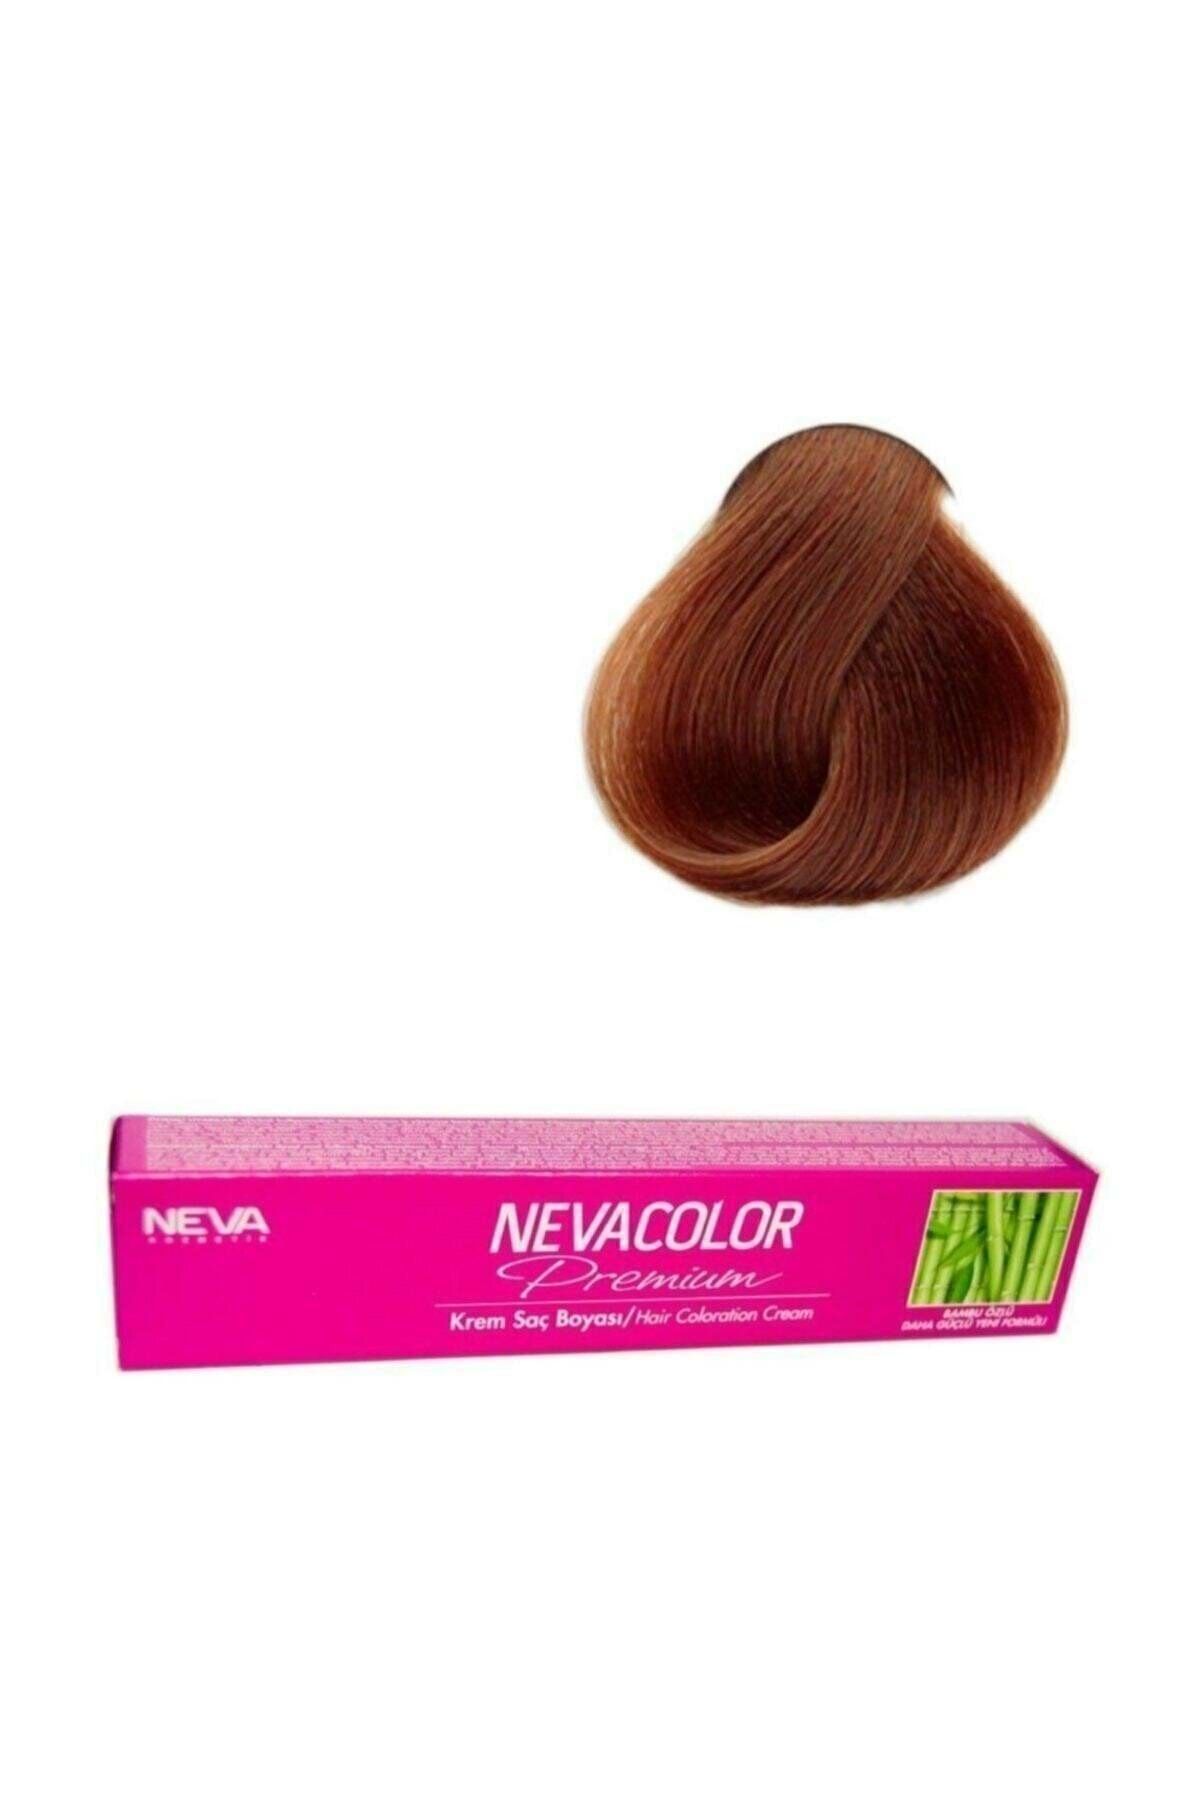 Neva Color Premium Kalıcı Krem Saç Boyası 7 Kumral